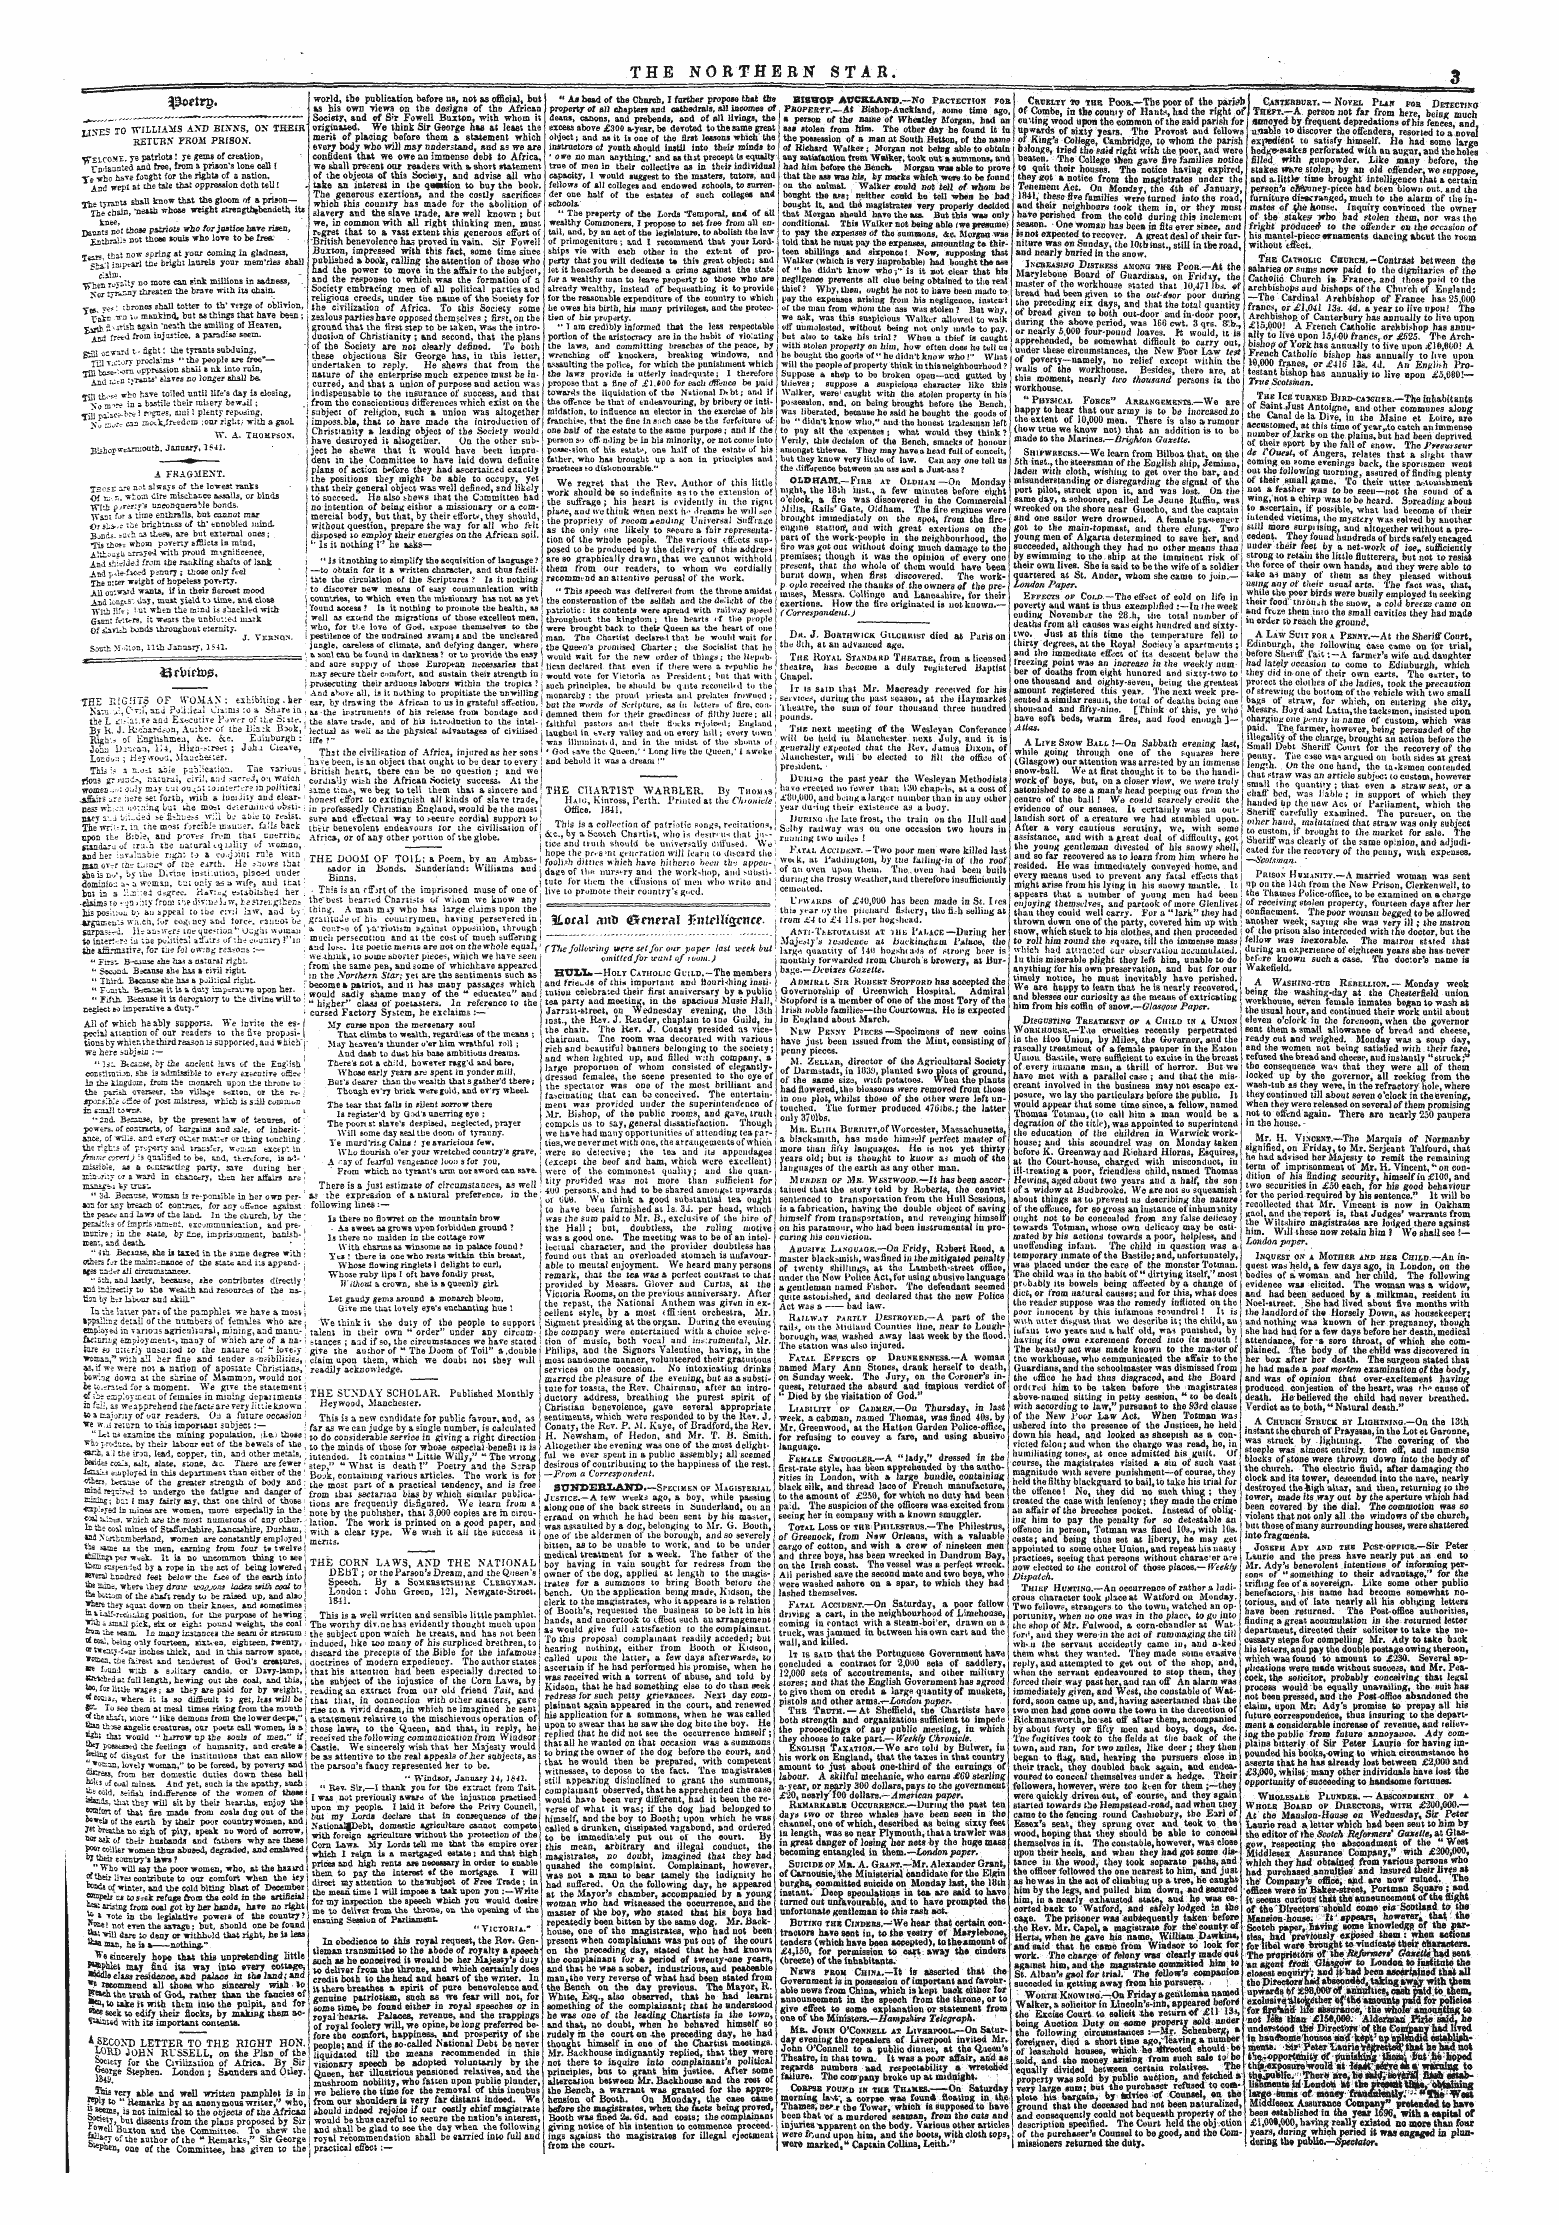 Northern Star (1837-1852): jS F Y, 5th edition - Bnnfto£.